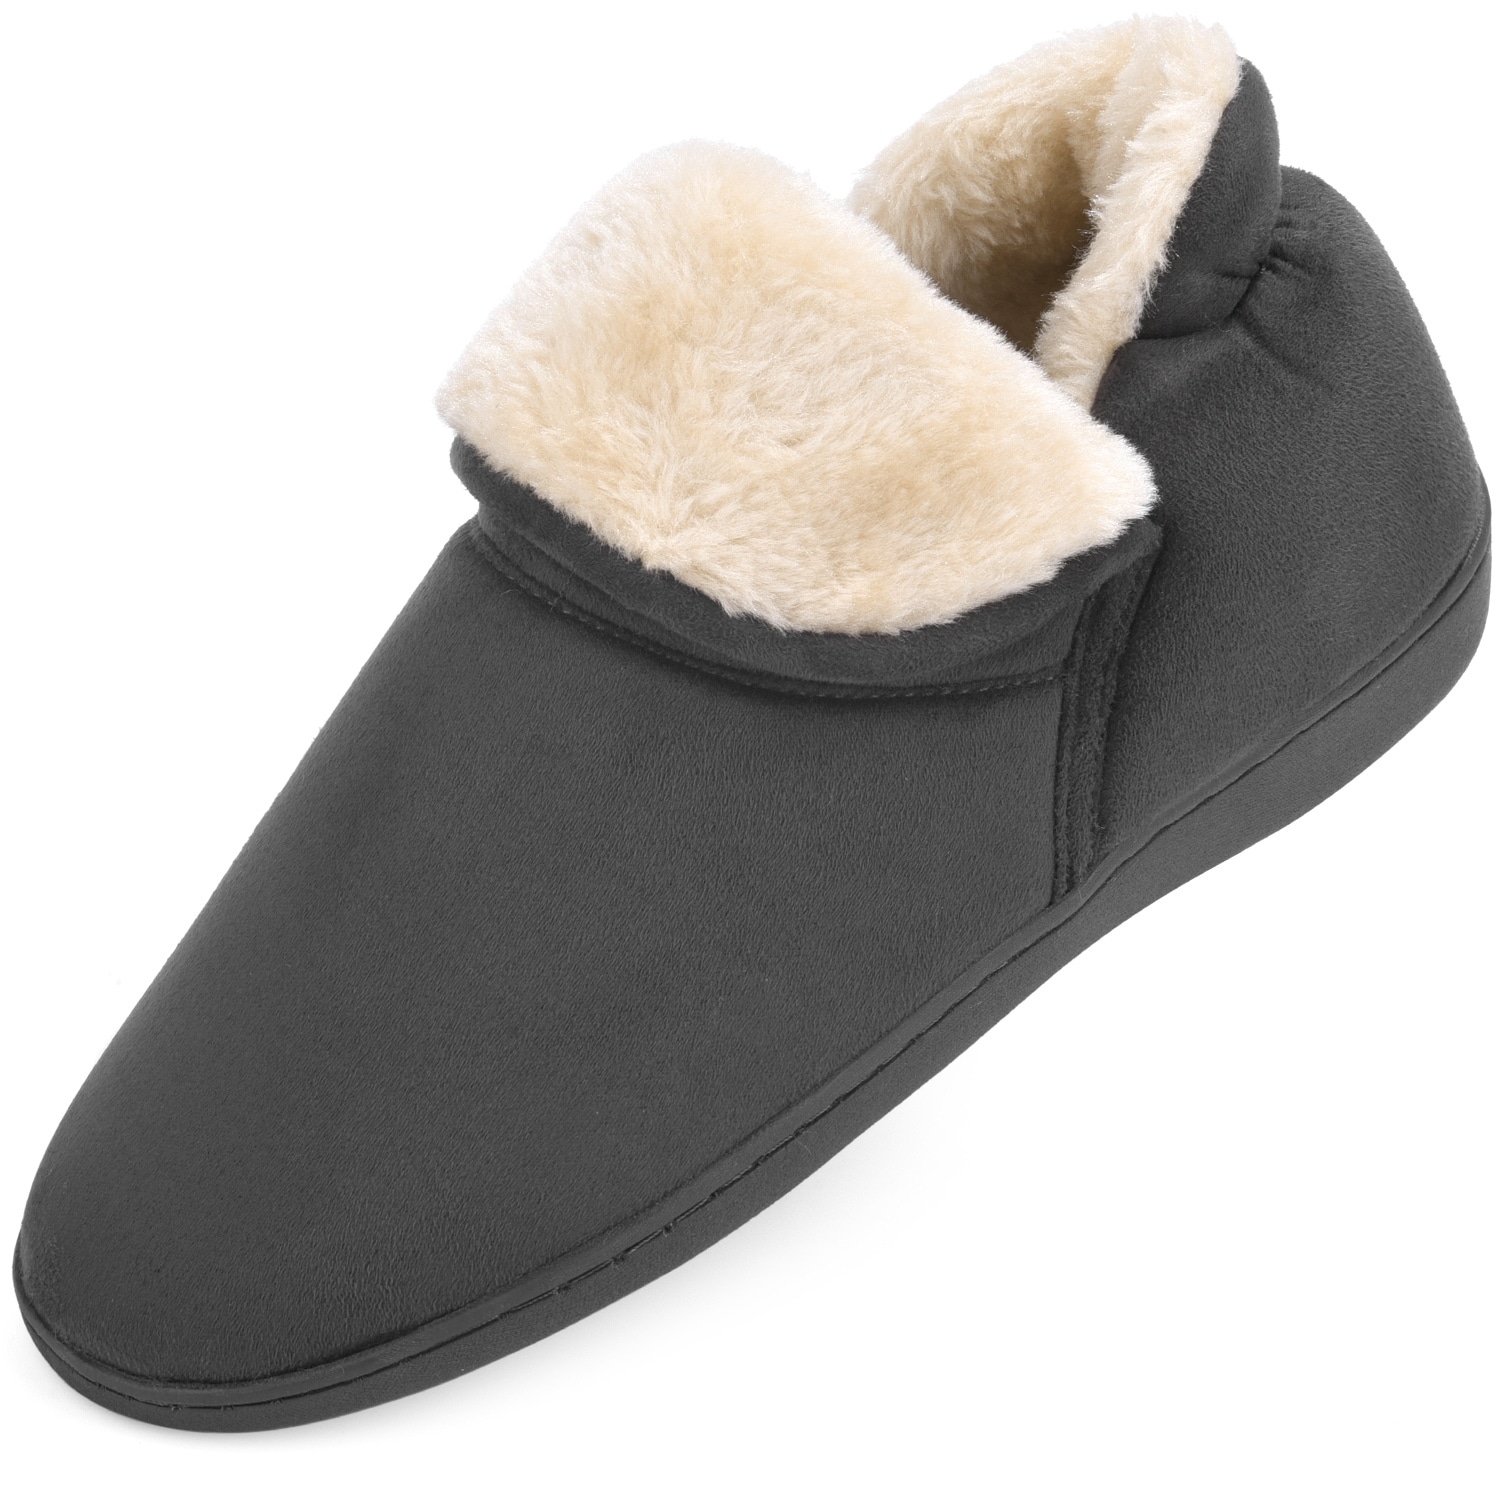 memory foam bootie slippers